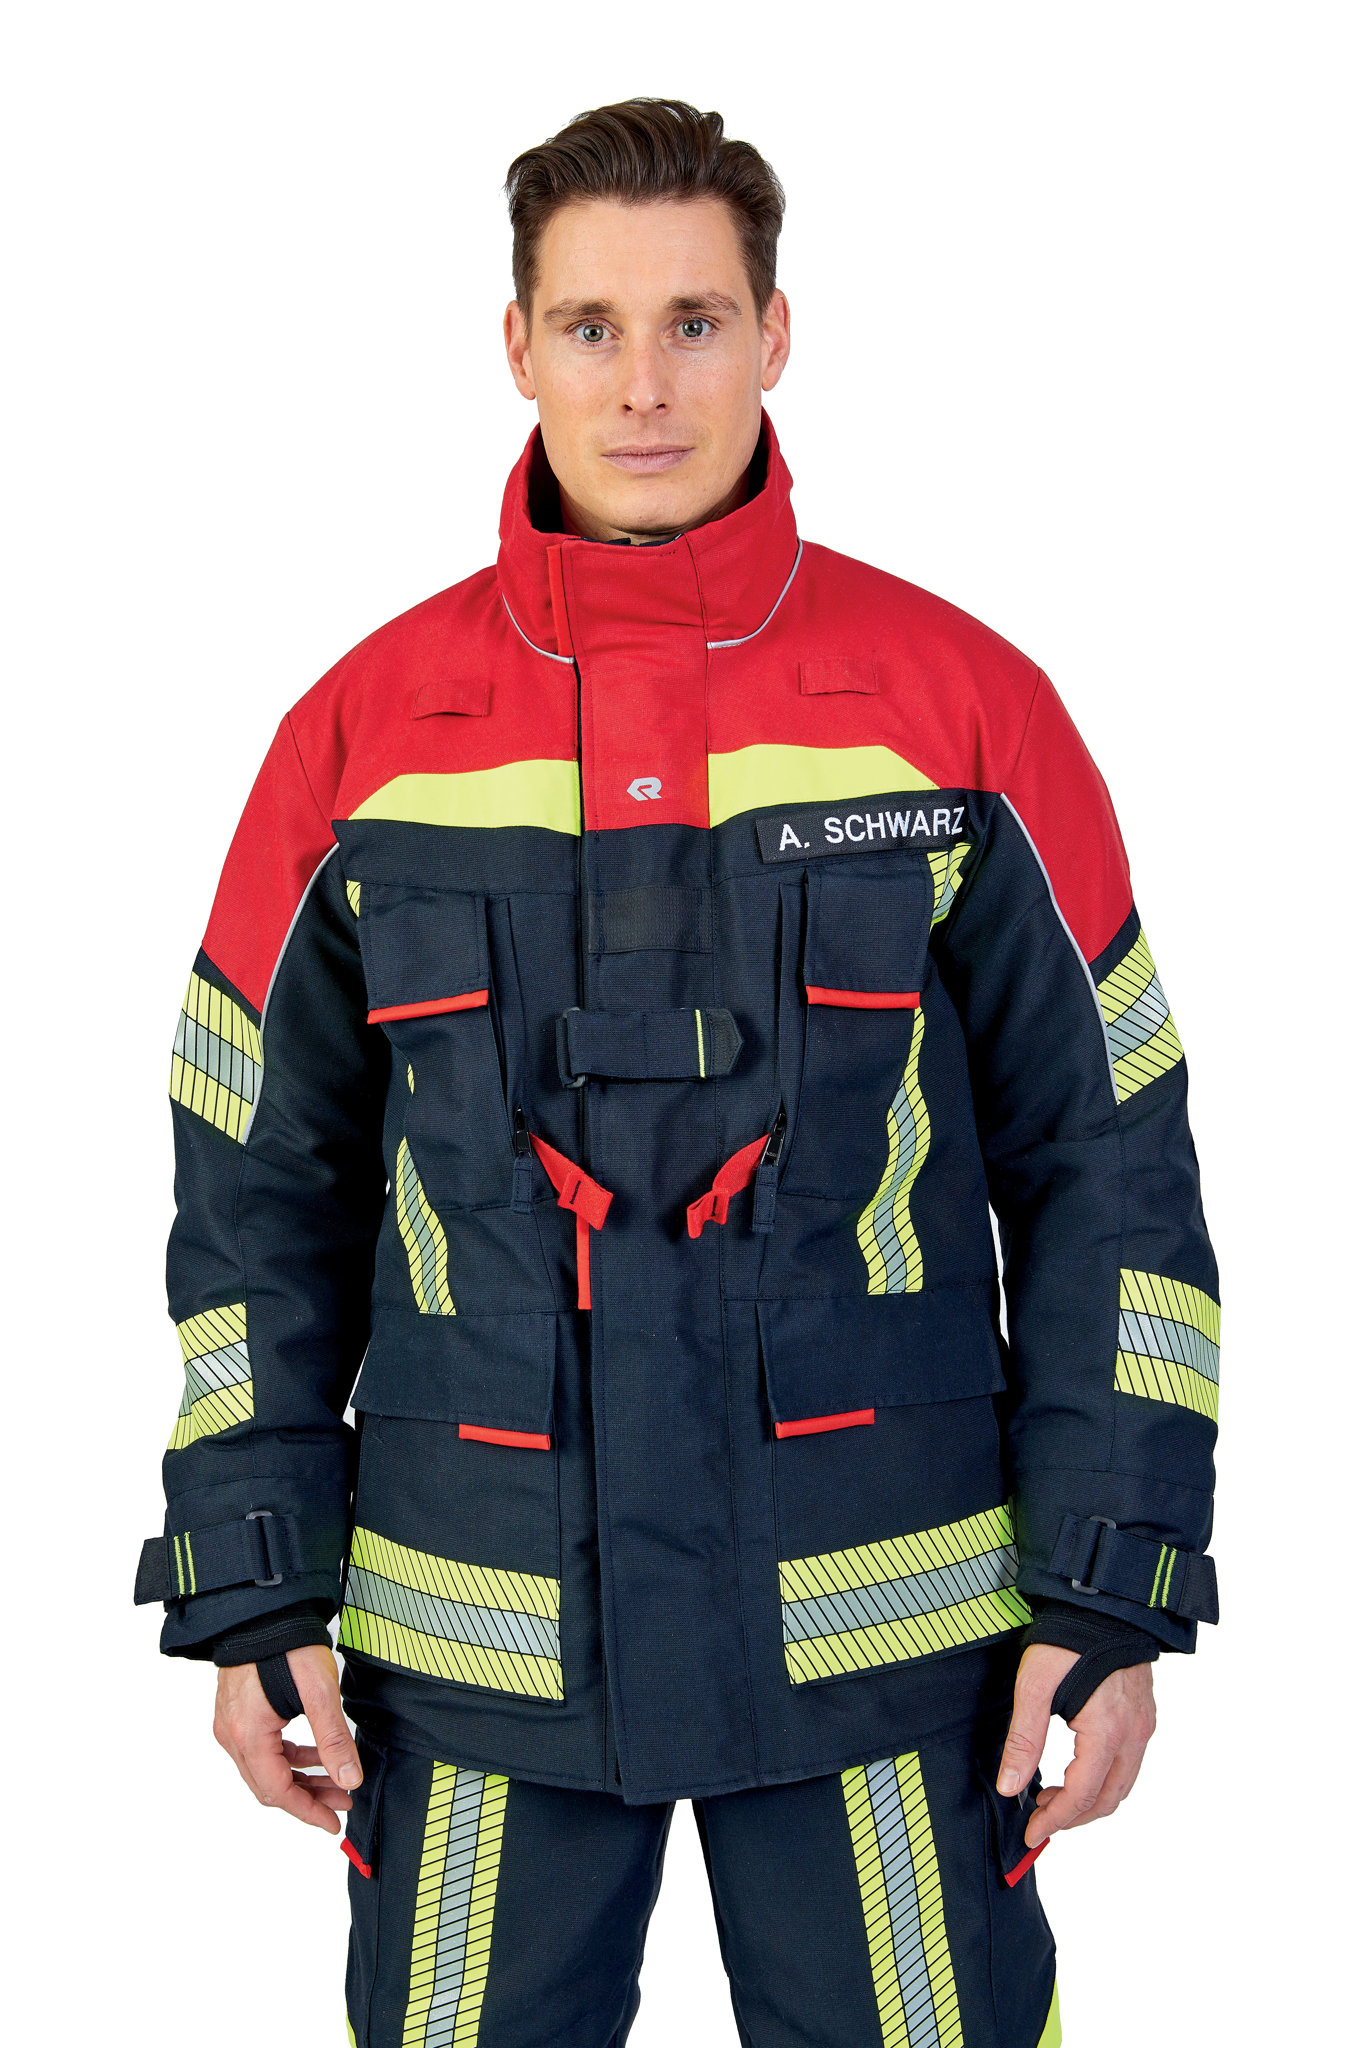 Bild von ROSENBAUER Feuerwehreinsatzjacke FIRE FLEX, NOMEX NXT, schwarzblau/rot, Gr. 56-58 E